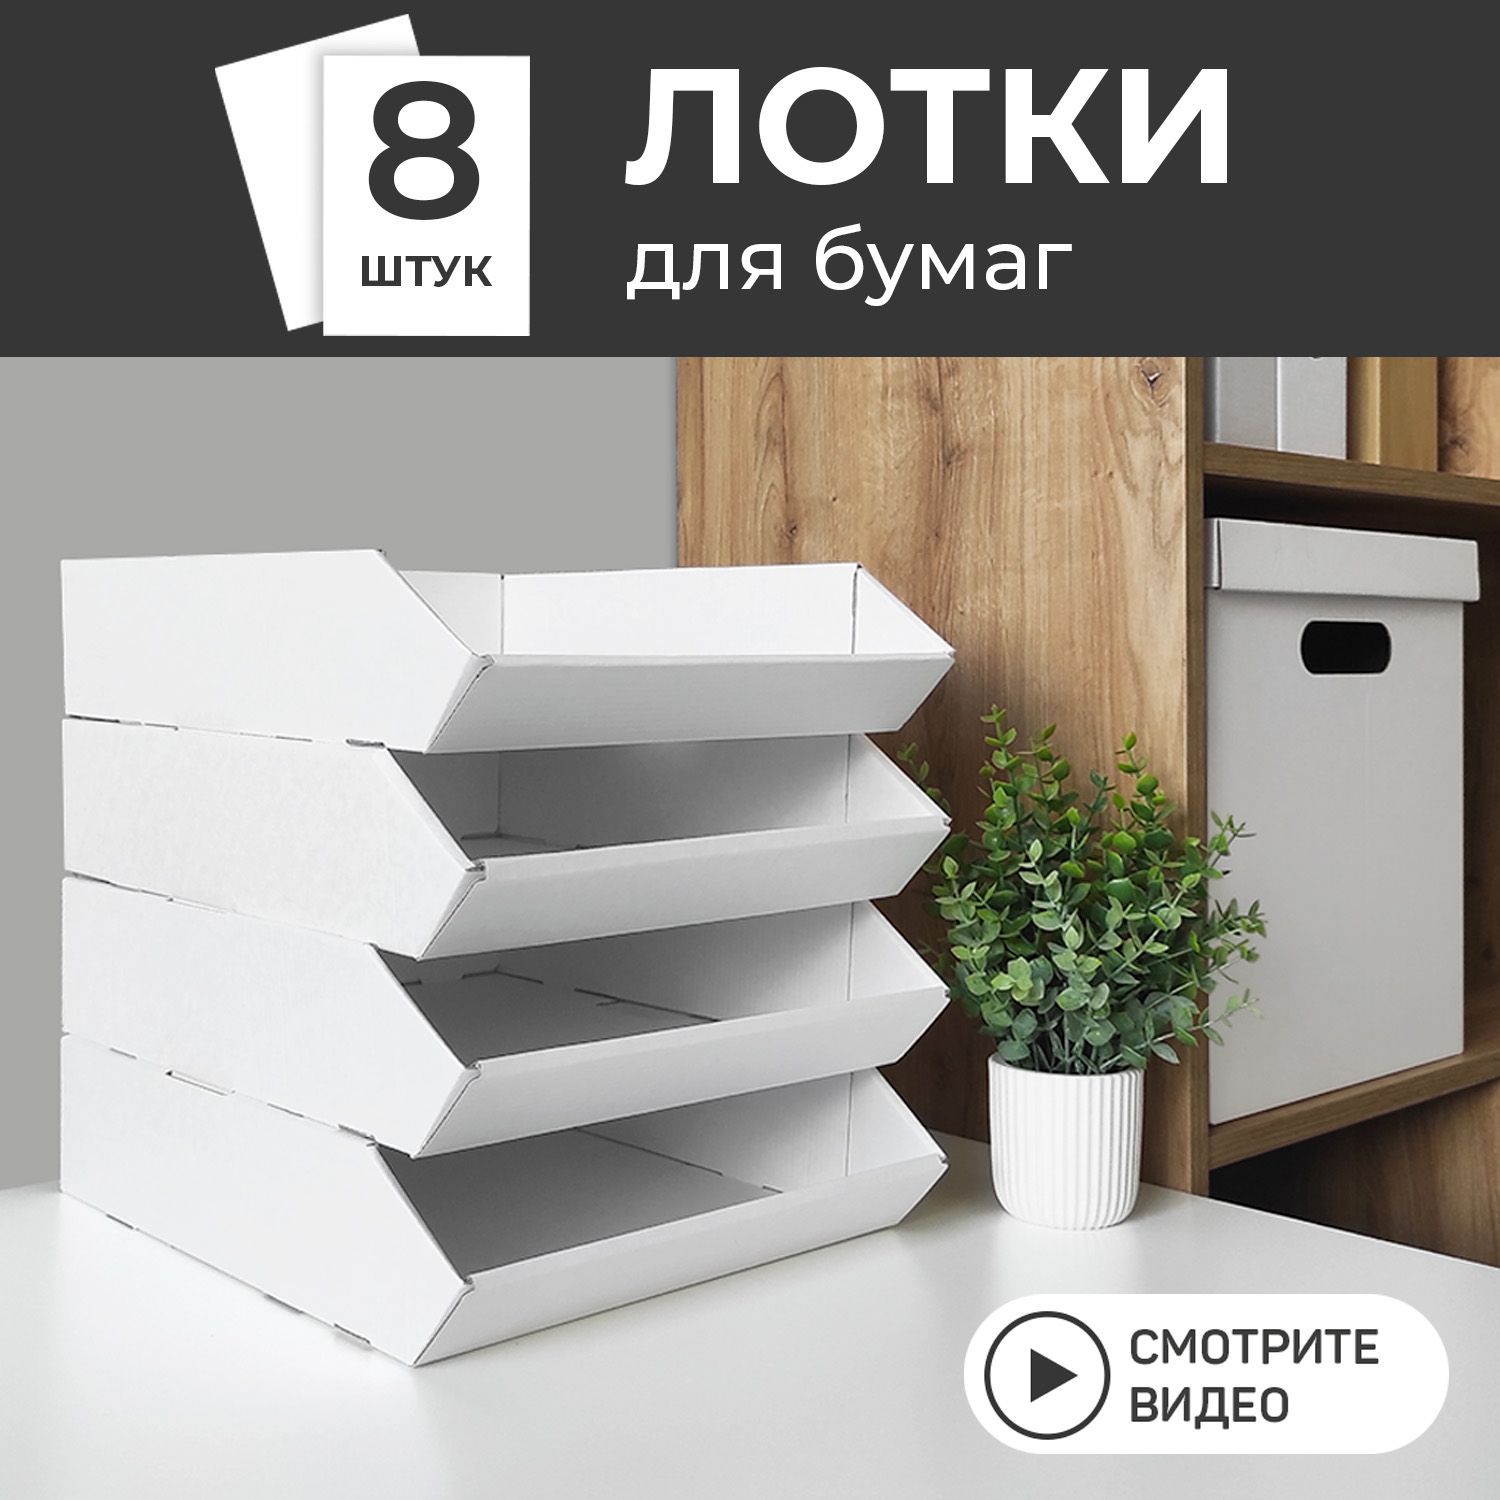 Лотки, боксы для бумаг, купить, заказать в Минске недорого - Бумажная компания